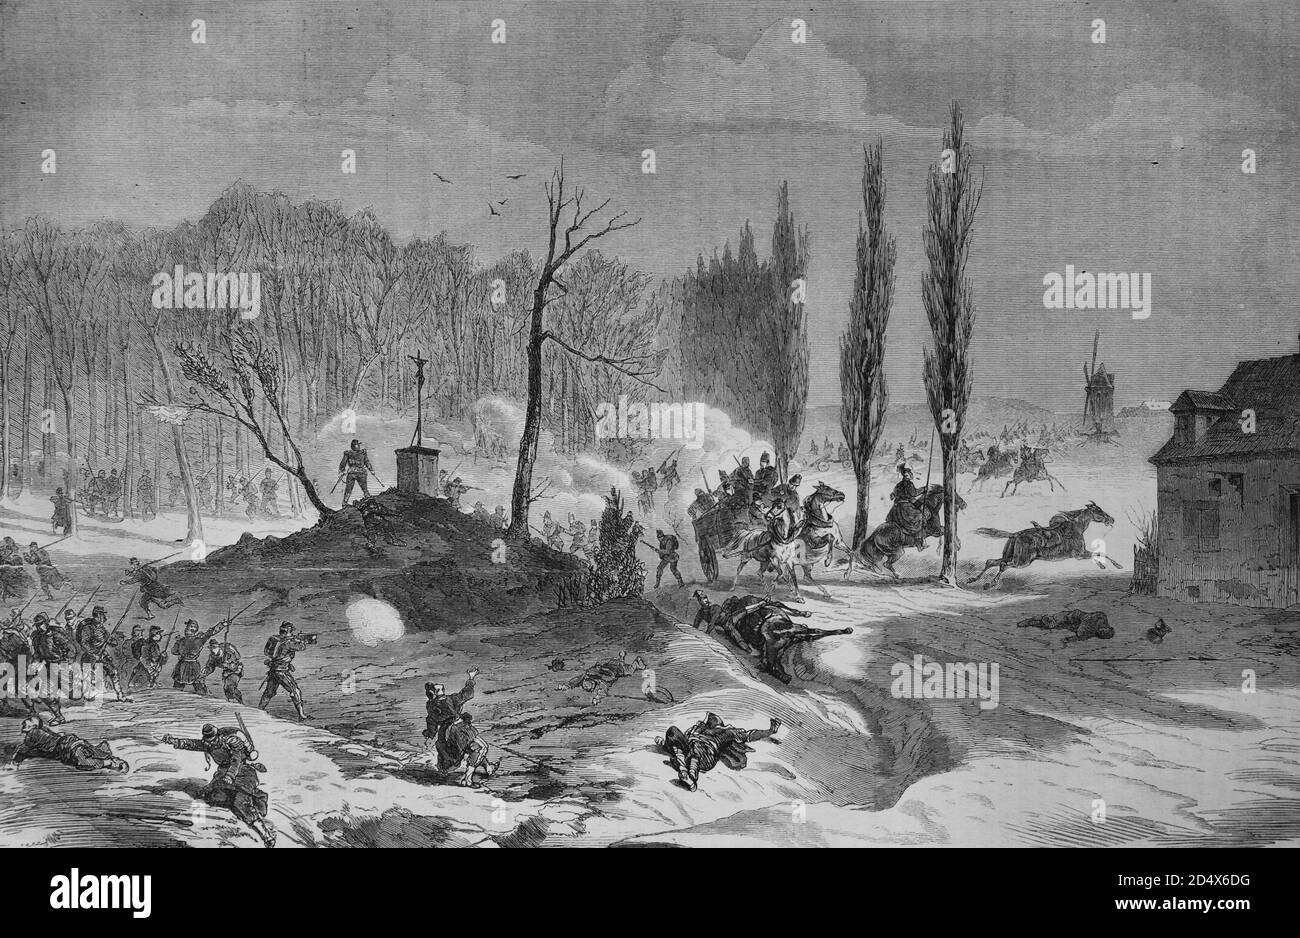 Schlacht von Le Quesnel am 23. November 1870, illustrierte Kriegsgeschichte, Deutsch-Französischer Krieg 1870-1871 Stockfoto